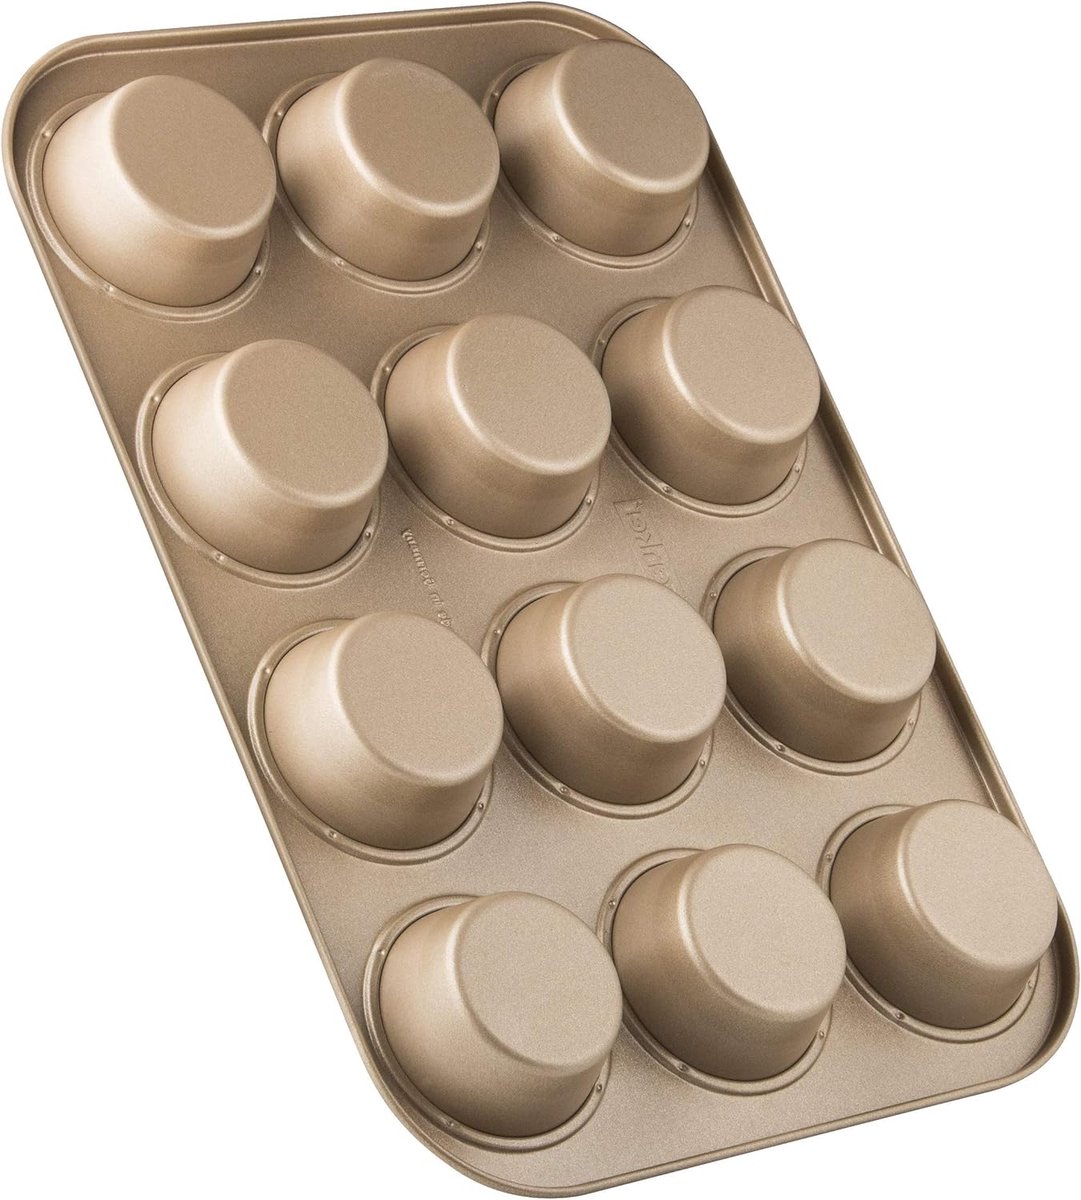 12 muffinvorm 7 cm goud, muffinbakvorm van plaatstaal, bakplaat met keramisch versterkte antiaanbaklaag (kleur: mahonie/goud), hoeveelheid: 1 stuk